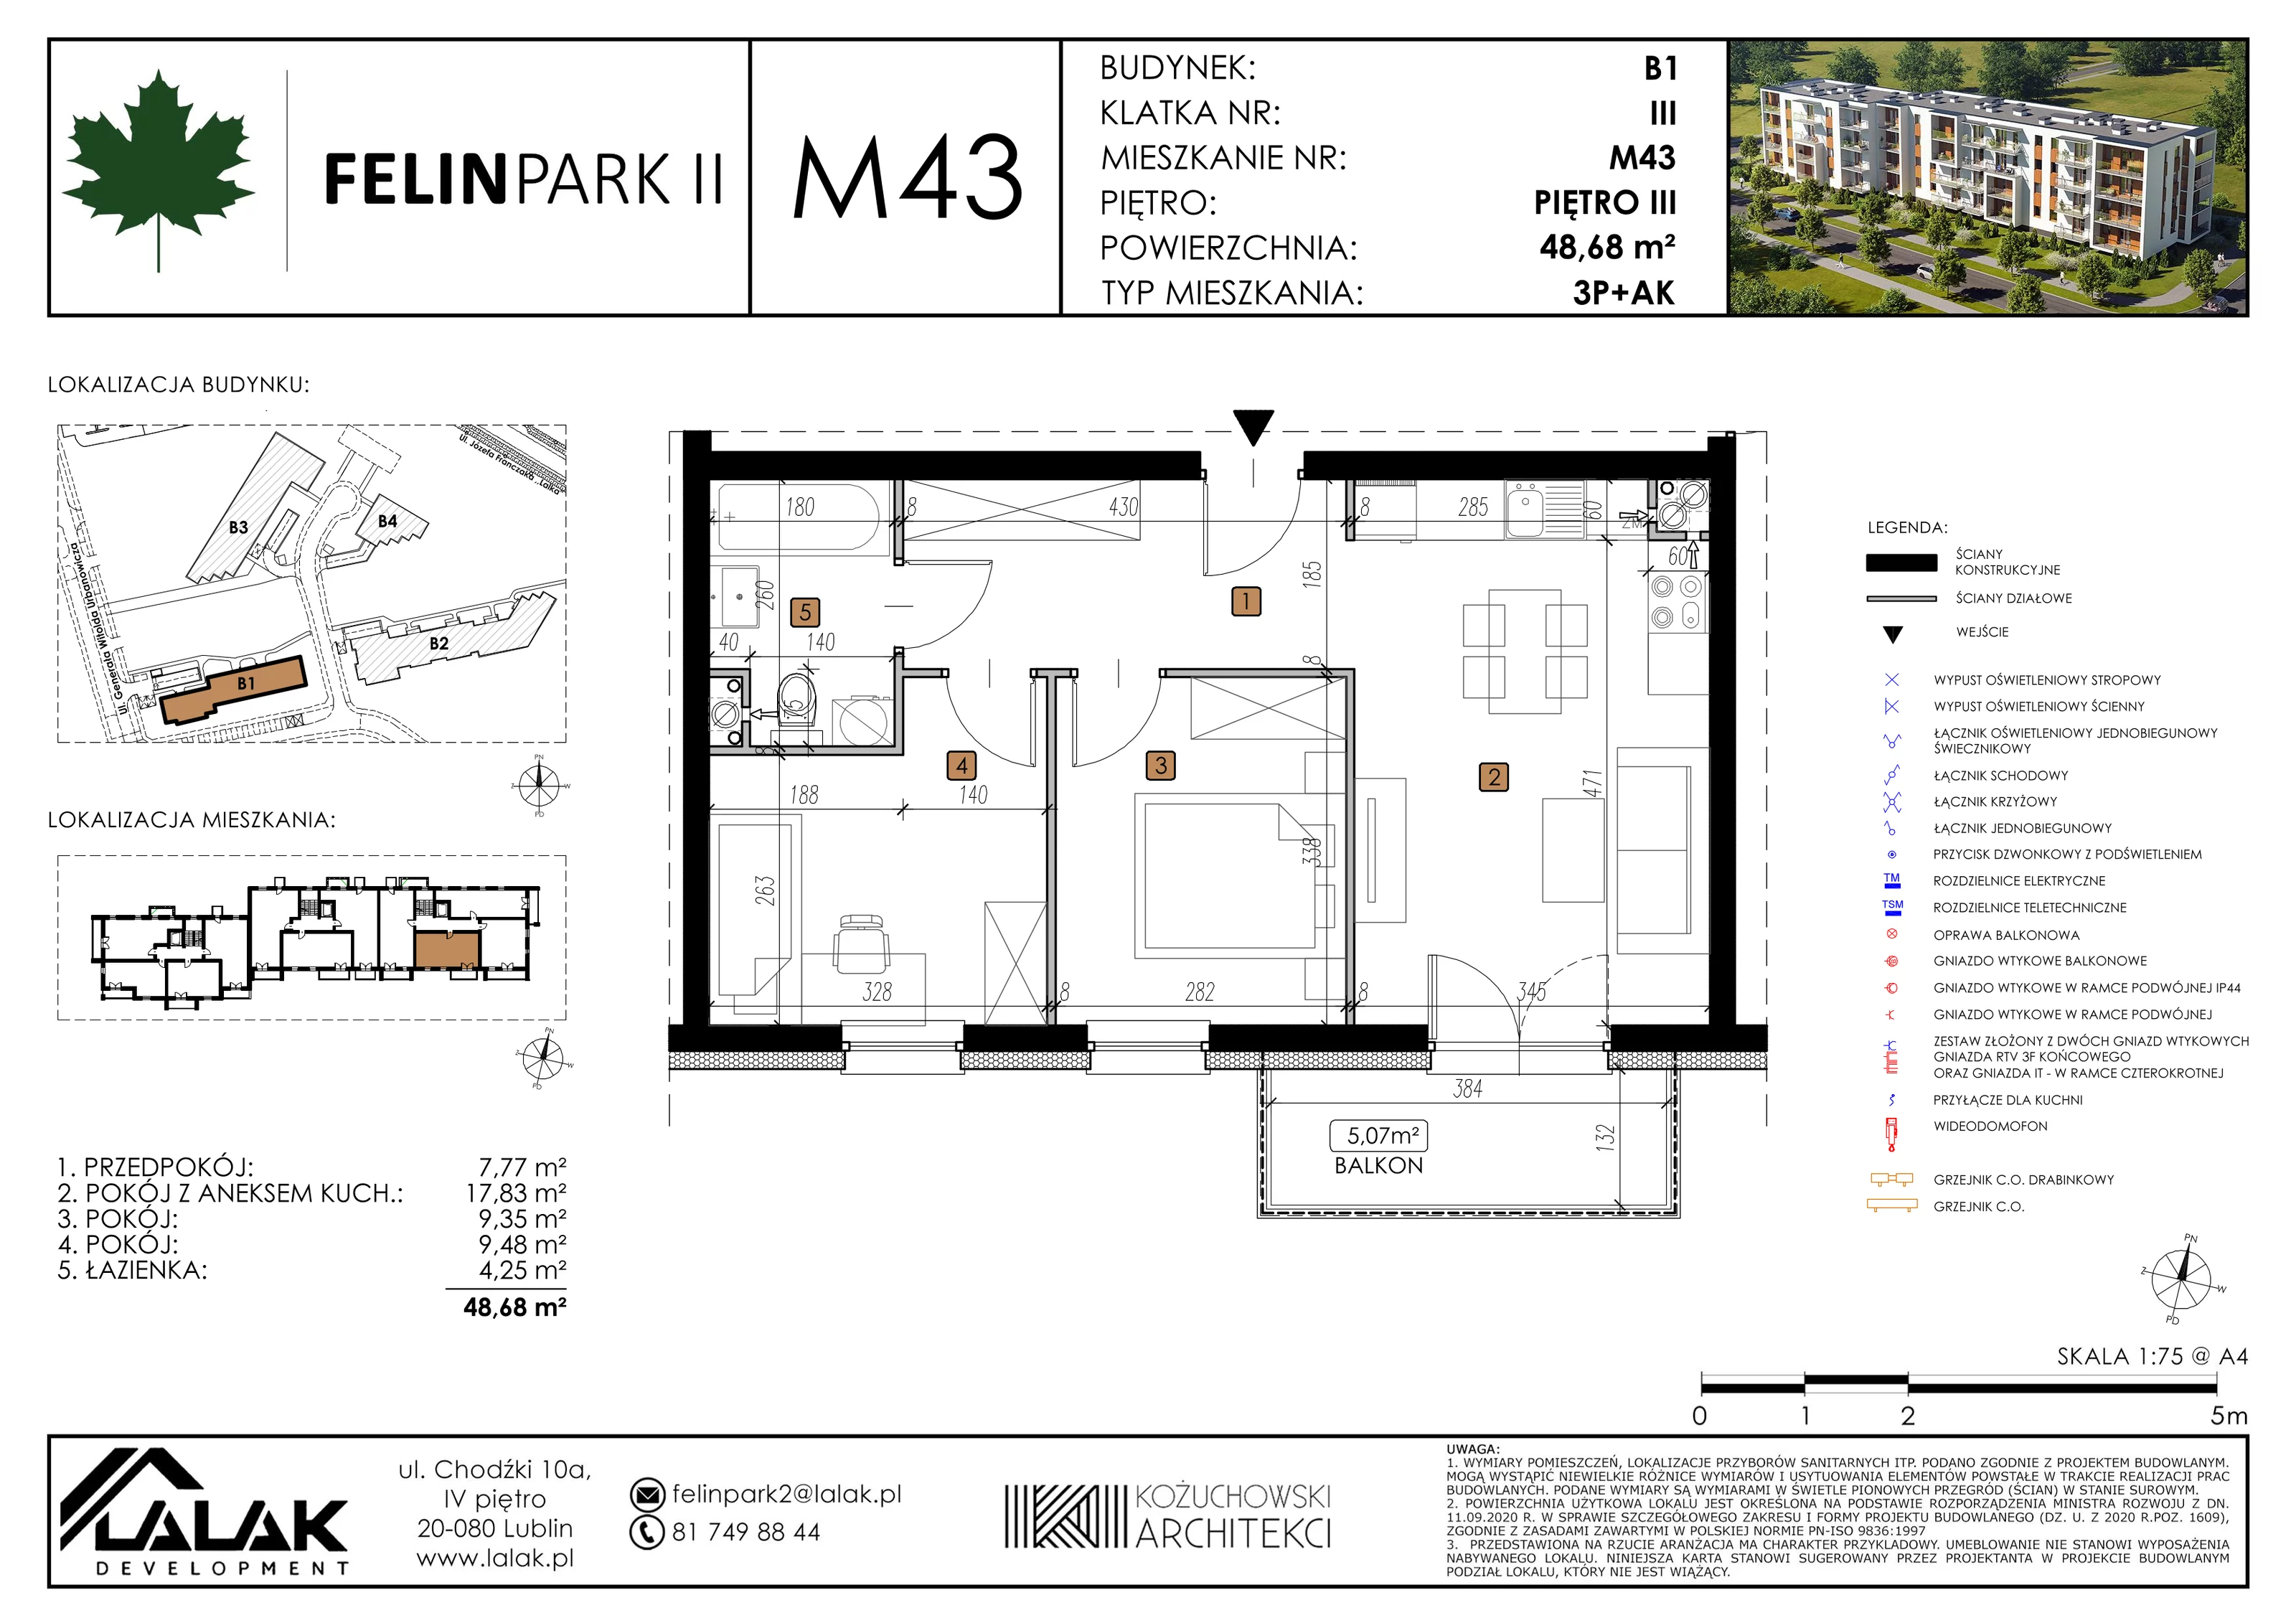 Mieszkanie 48,70 m², piętro 3, oferta nr B1_M43/I, Felin Park II, Lublin, Felin, ul. gen. Stanisława Skalskiego 8-10